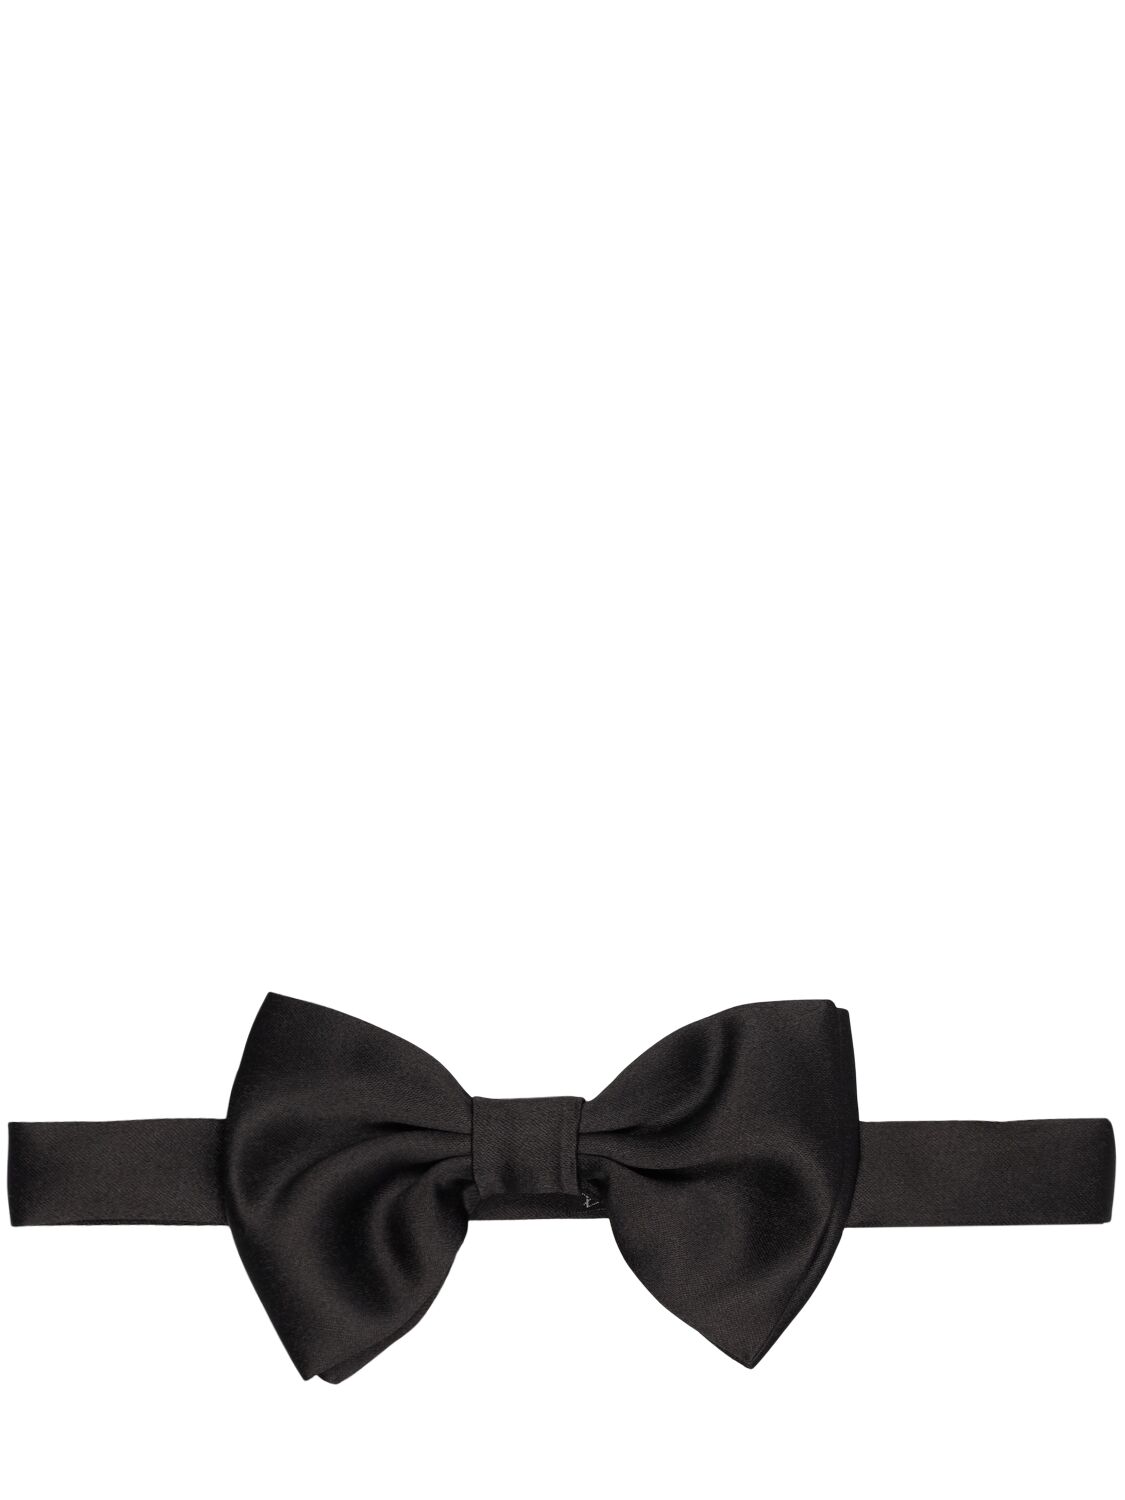 Tagliatore Plain Tech Bow Tie In Black